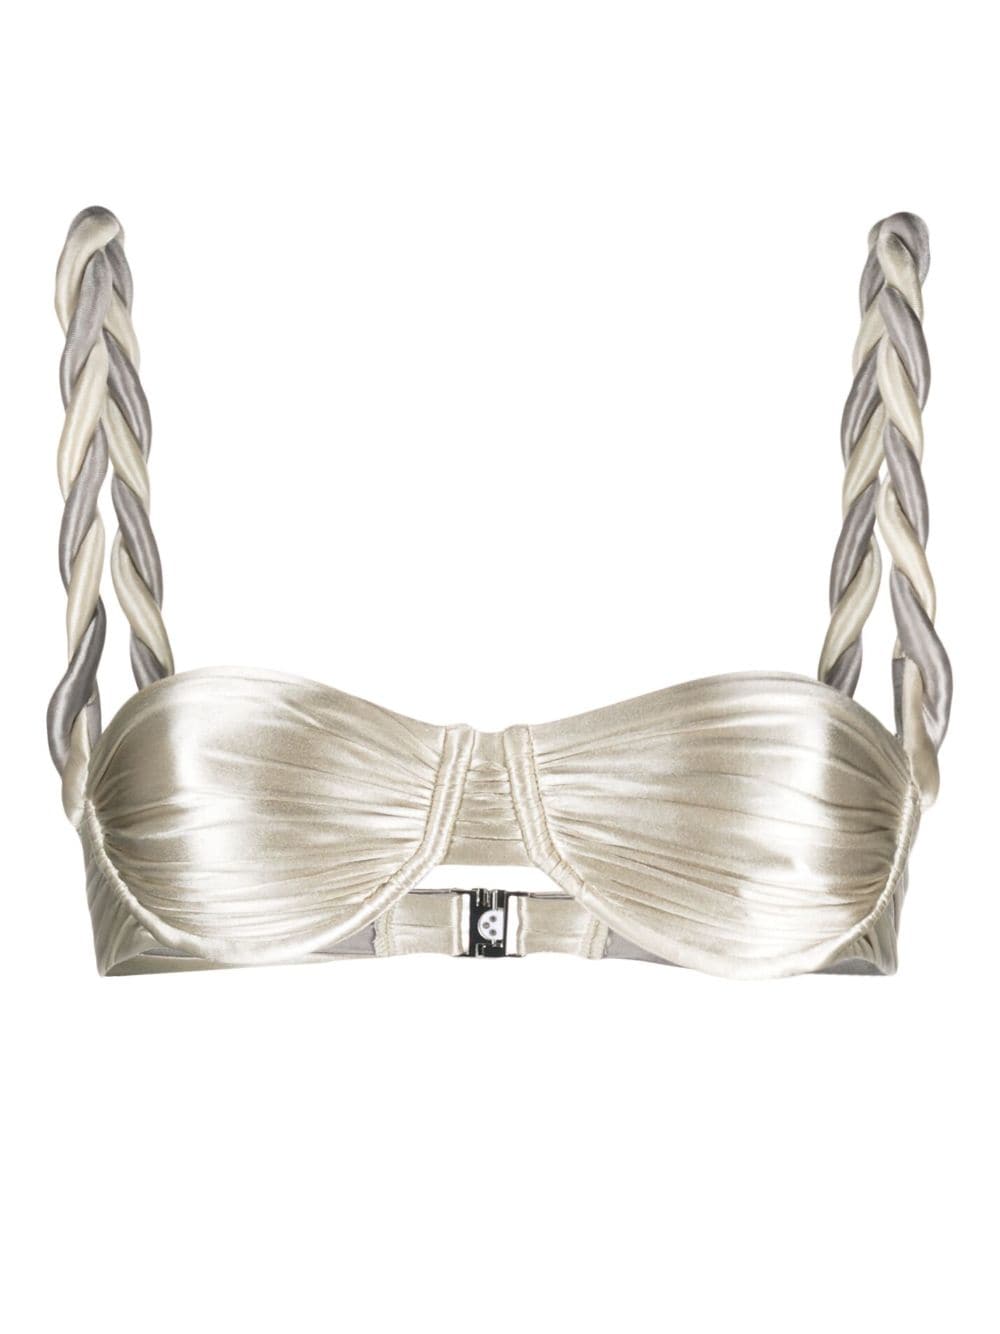 Louis Vuitton, Accessories, Brand New Louis Vuitton Tie The Knot  Reversible Belt Size 75